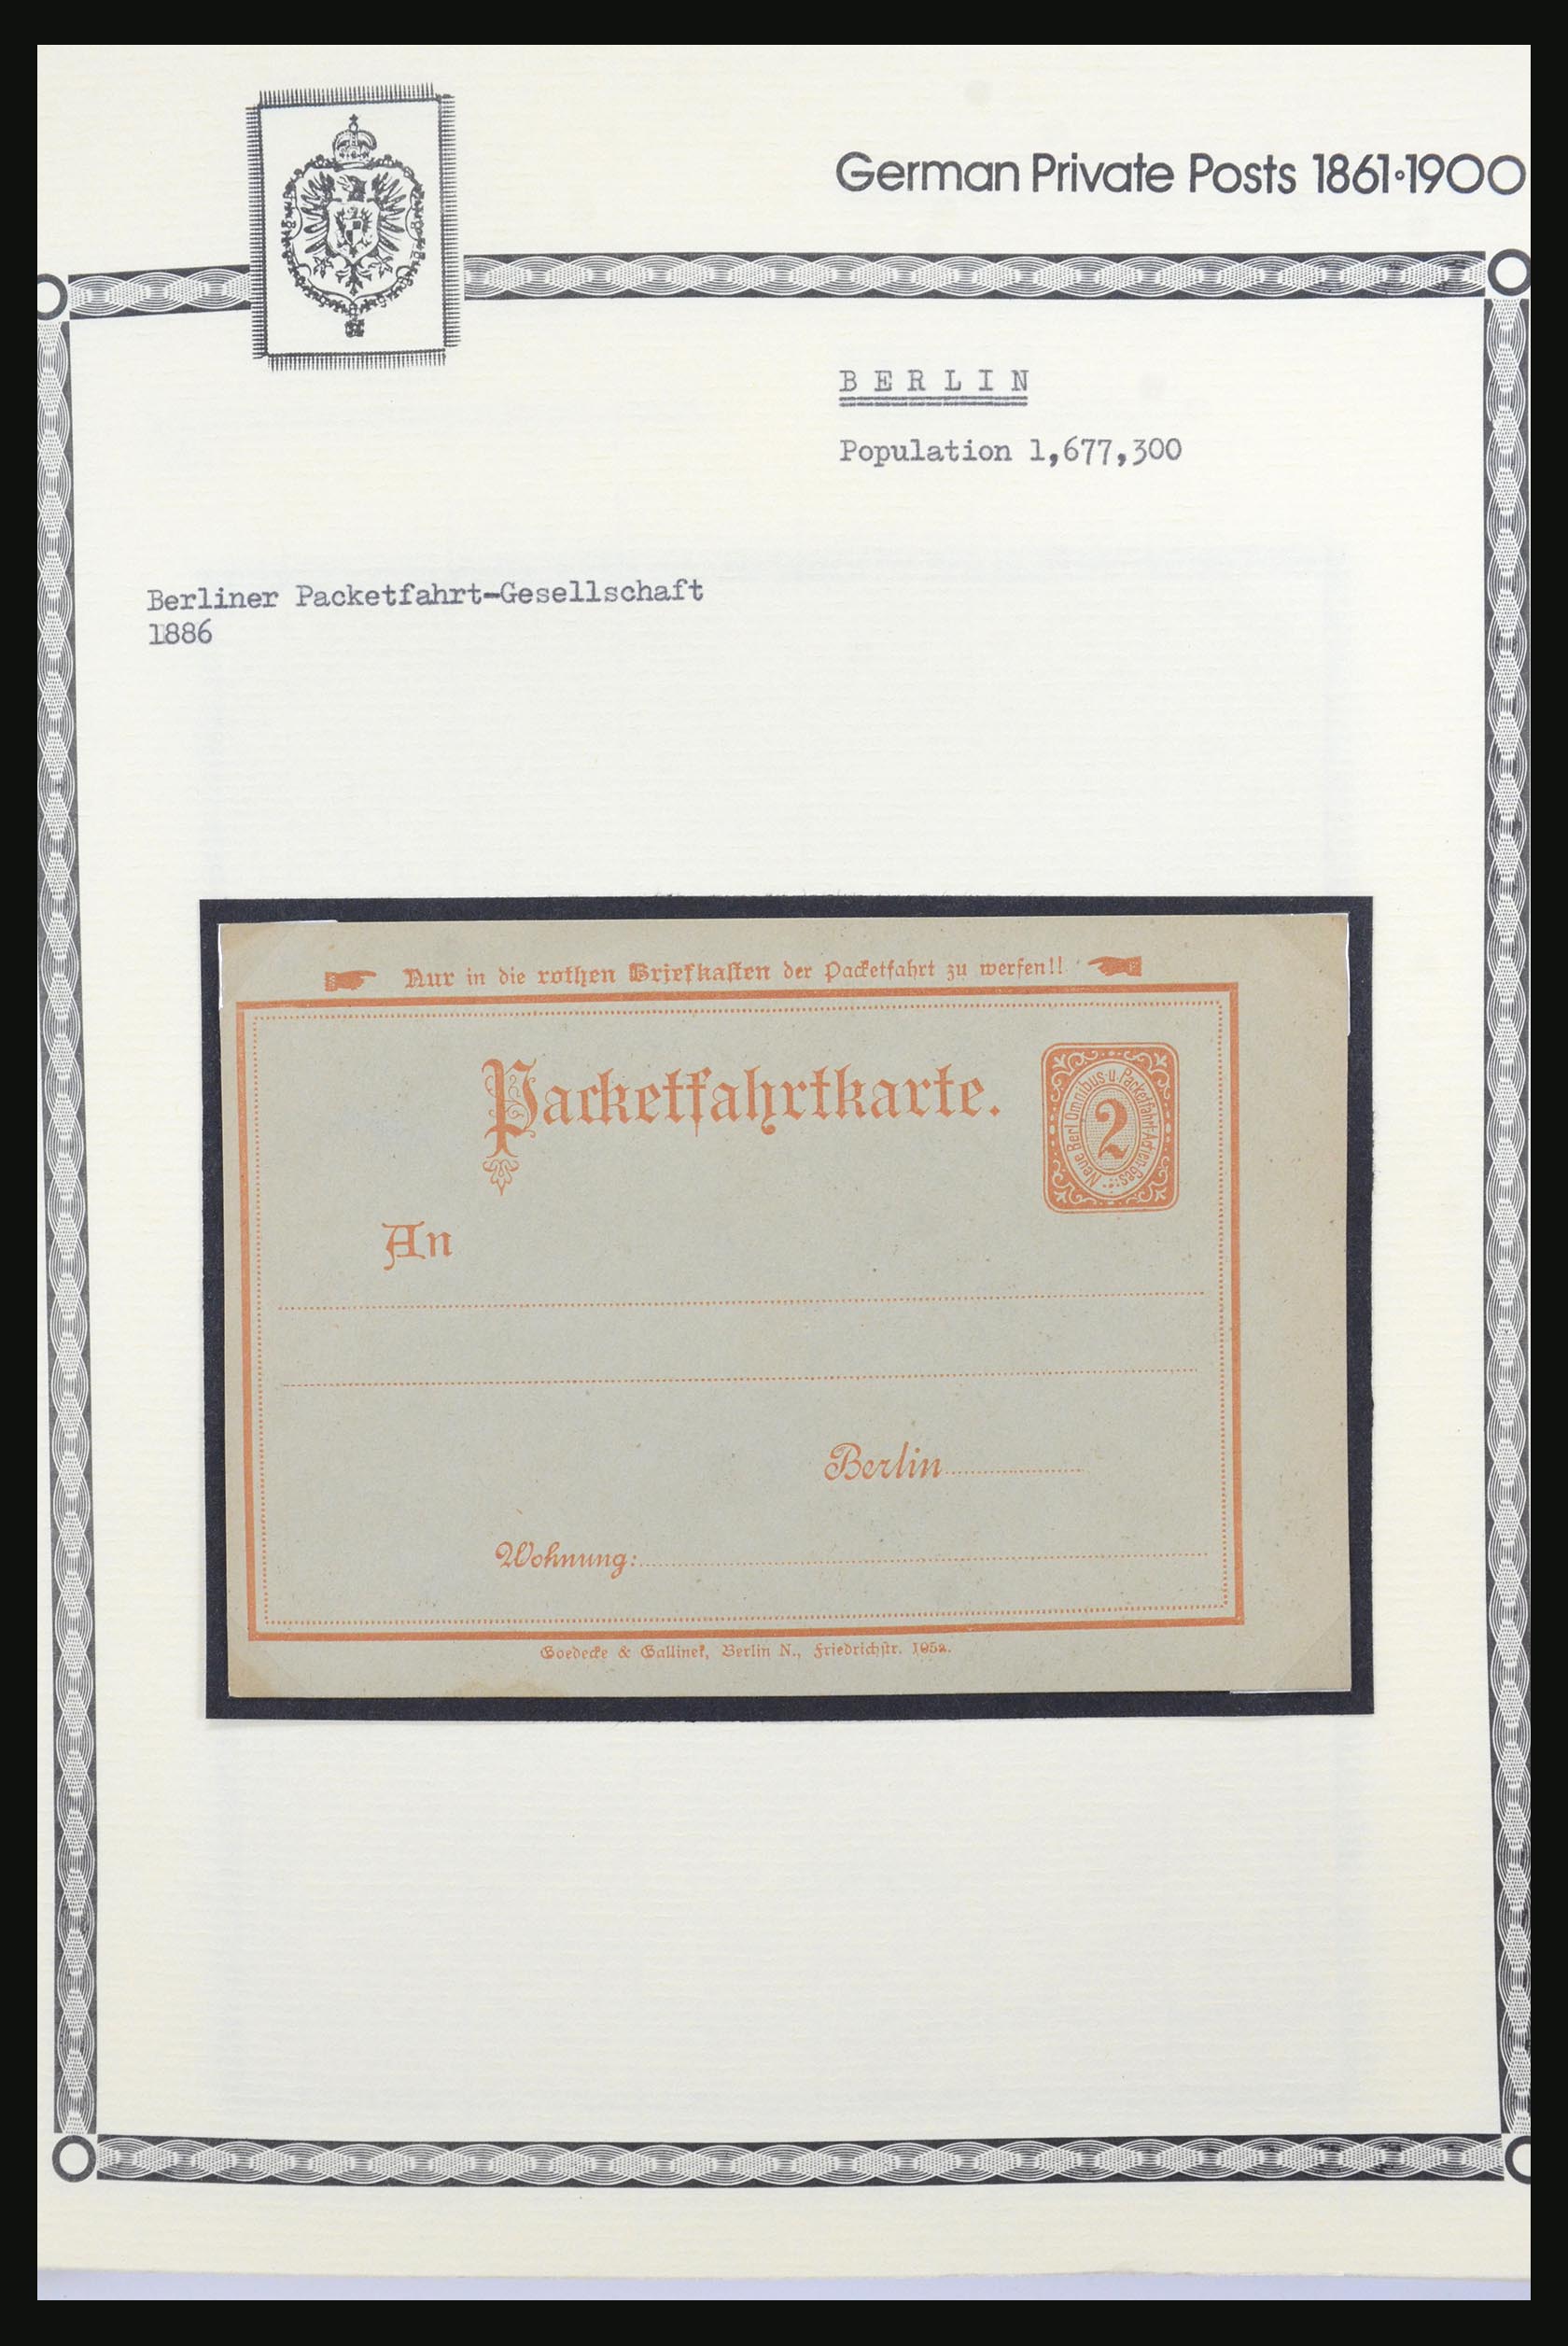 31578 011 - 31578 Germany localpost 1861-1900.